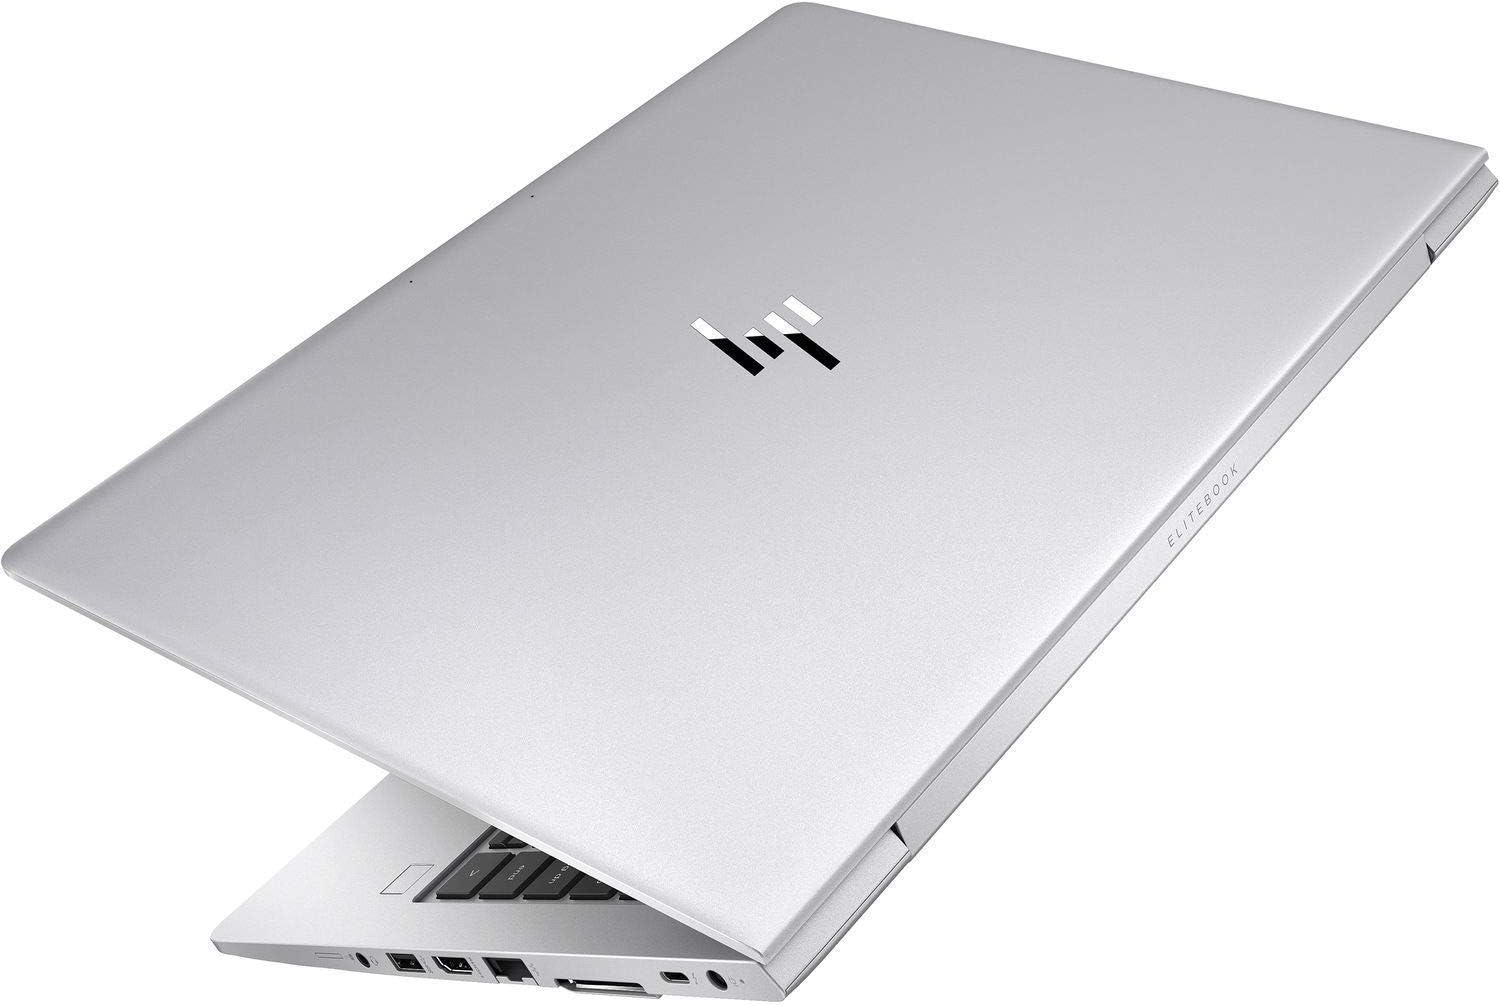 HP EliteBook 840 G6 14" FHD (1920x1080) IPS Business Laptop (Intel Quad Core i5-8265U, 8GB RAM, 256GB SSD)